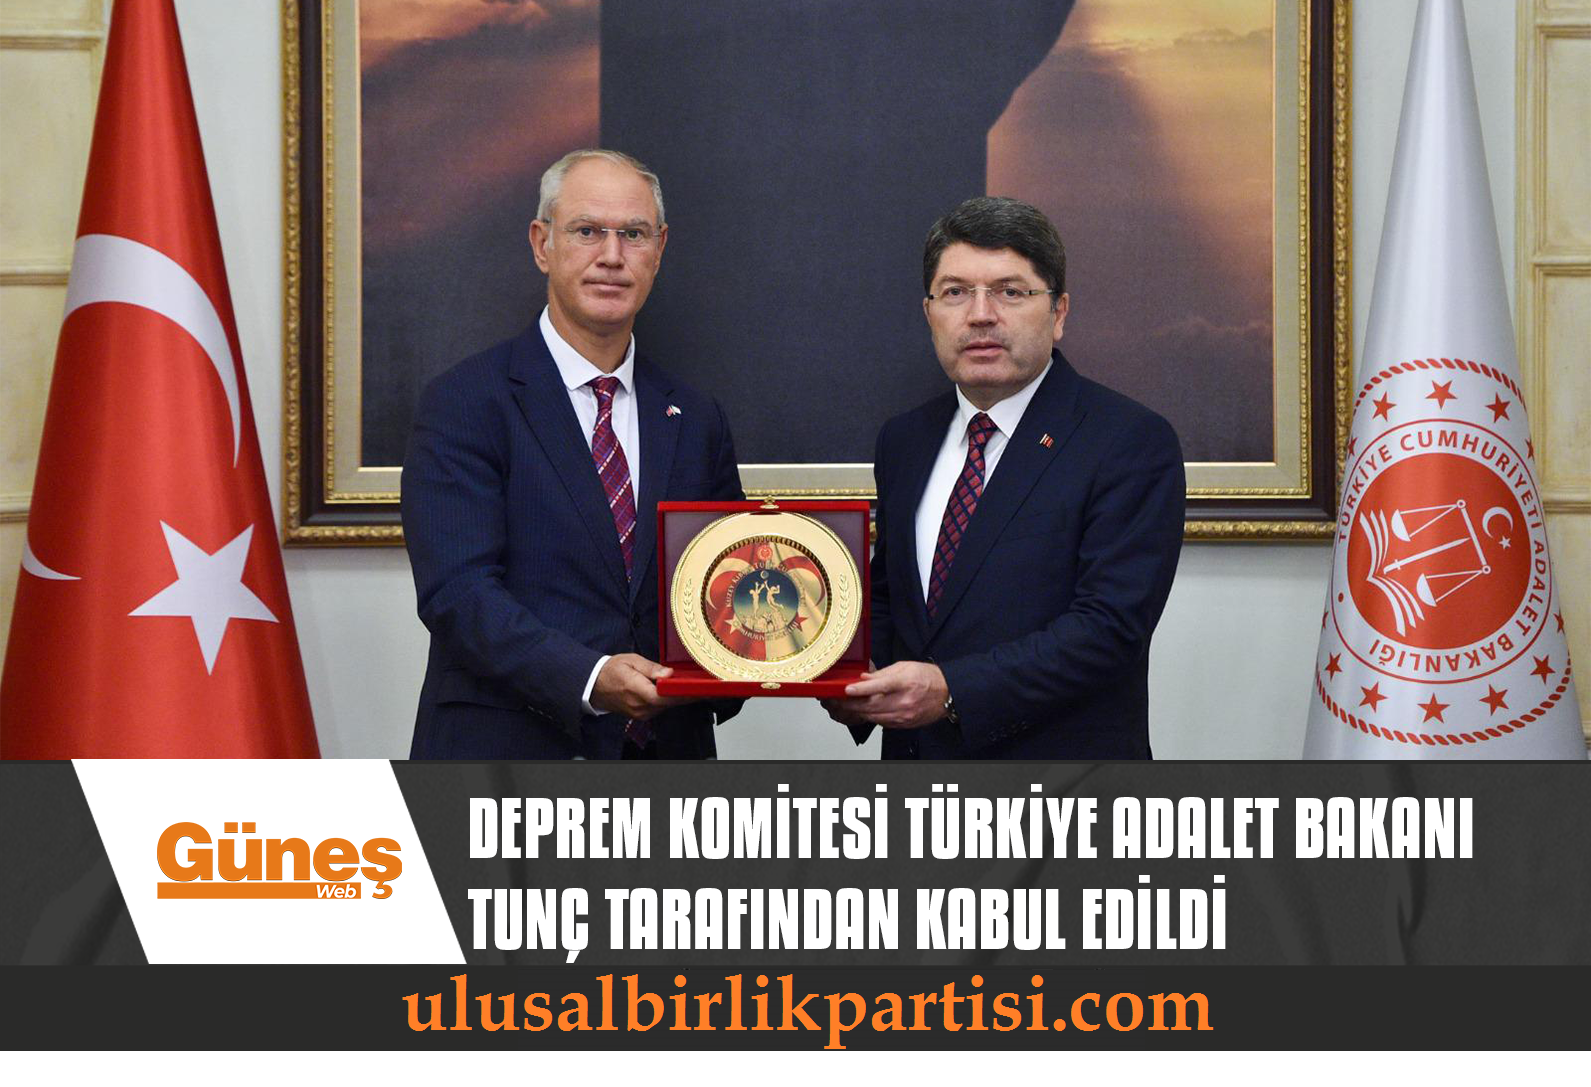 You are currently viewing Deprem Komitesi Türkiye Adalet Bakanı Tunç tarafından kabul edildi